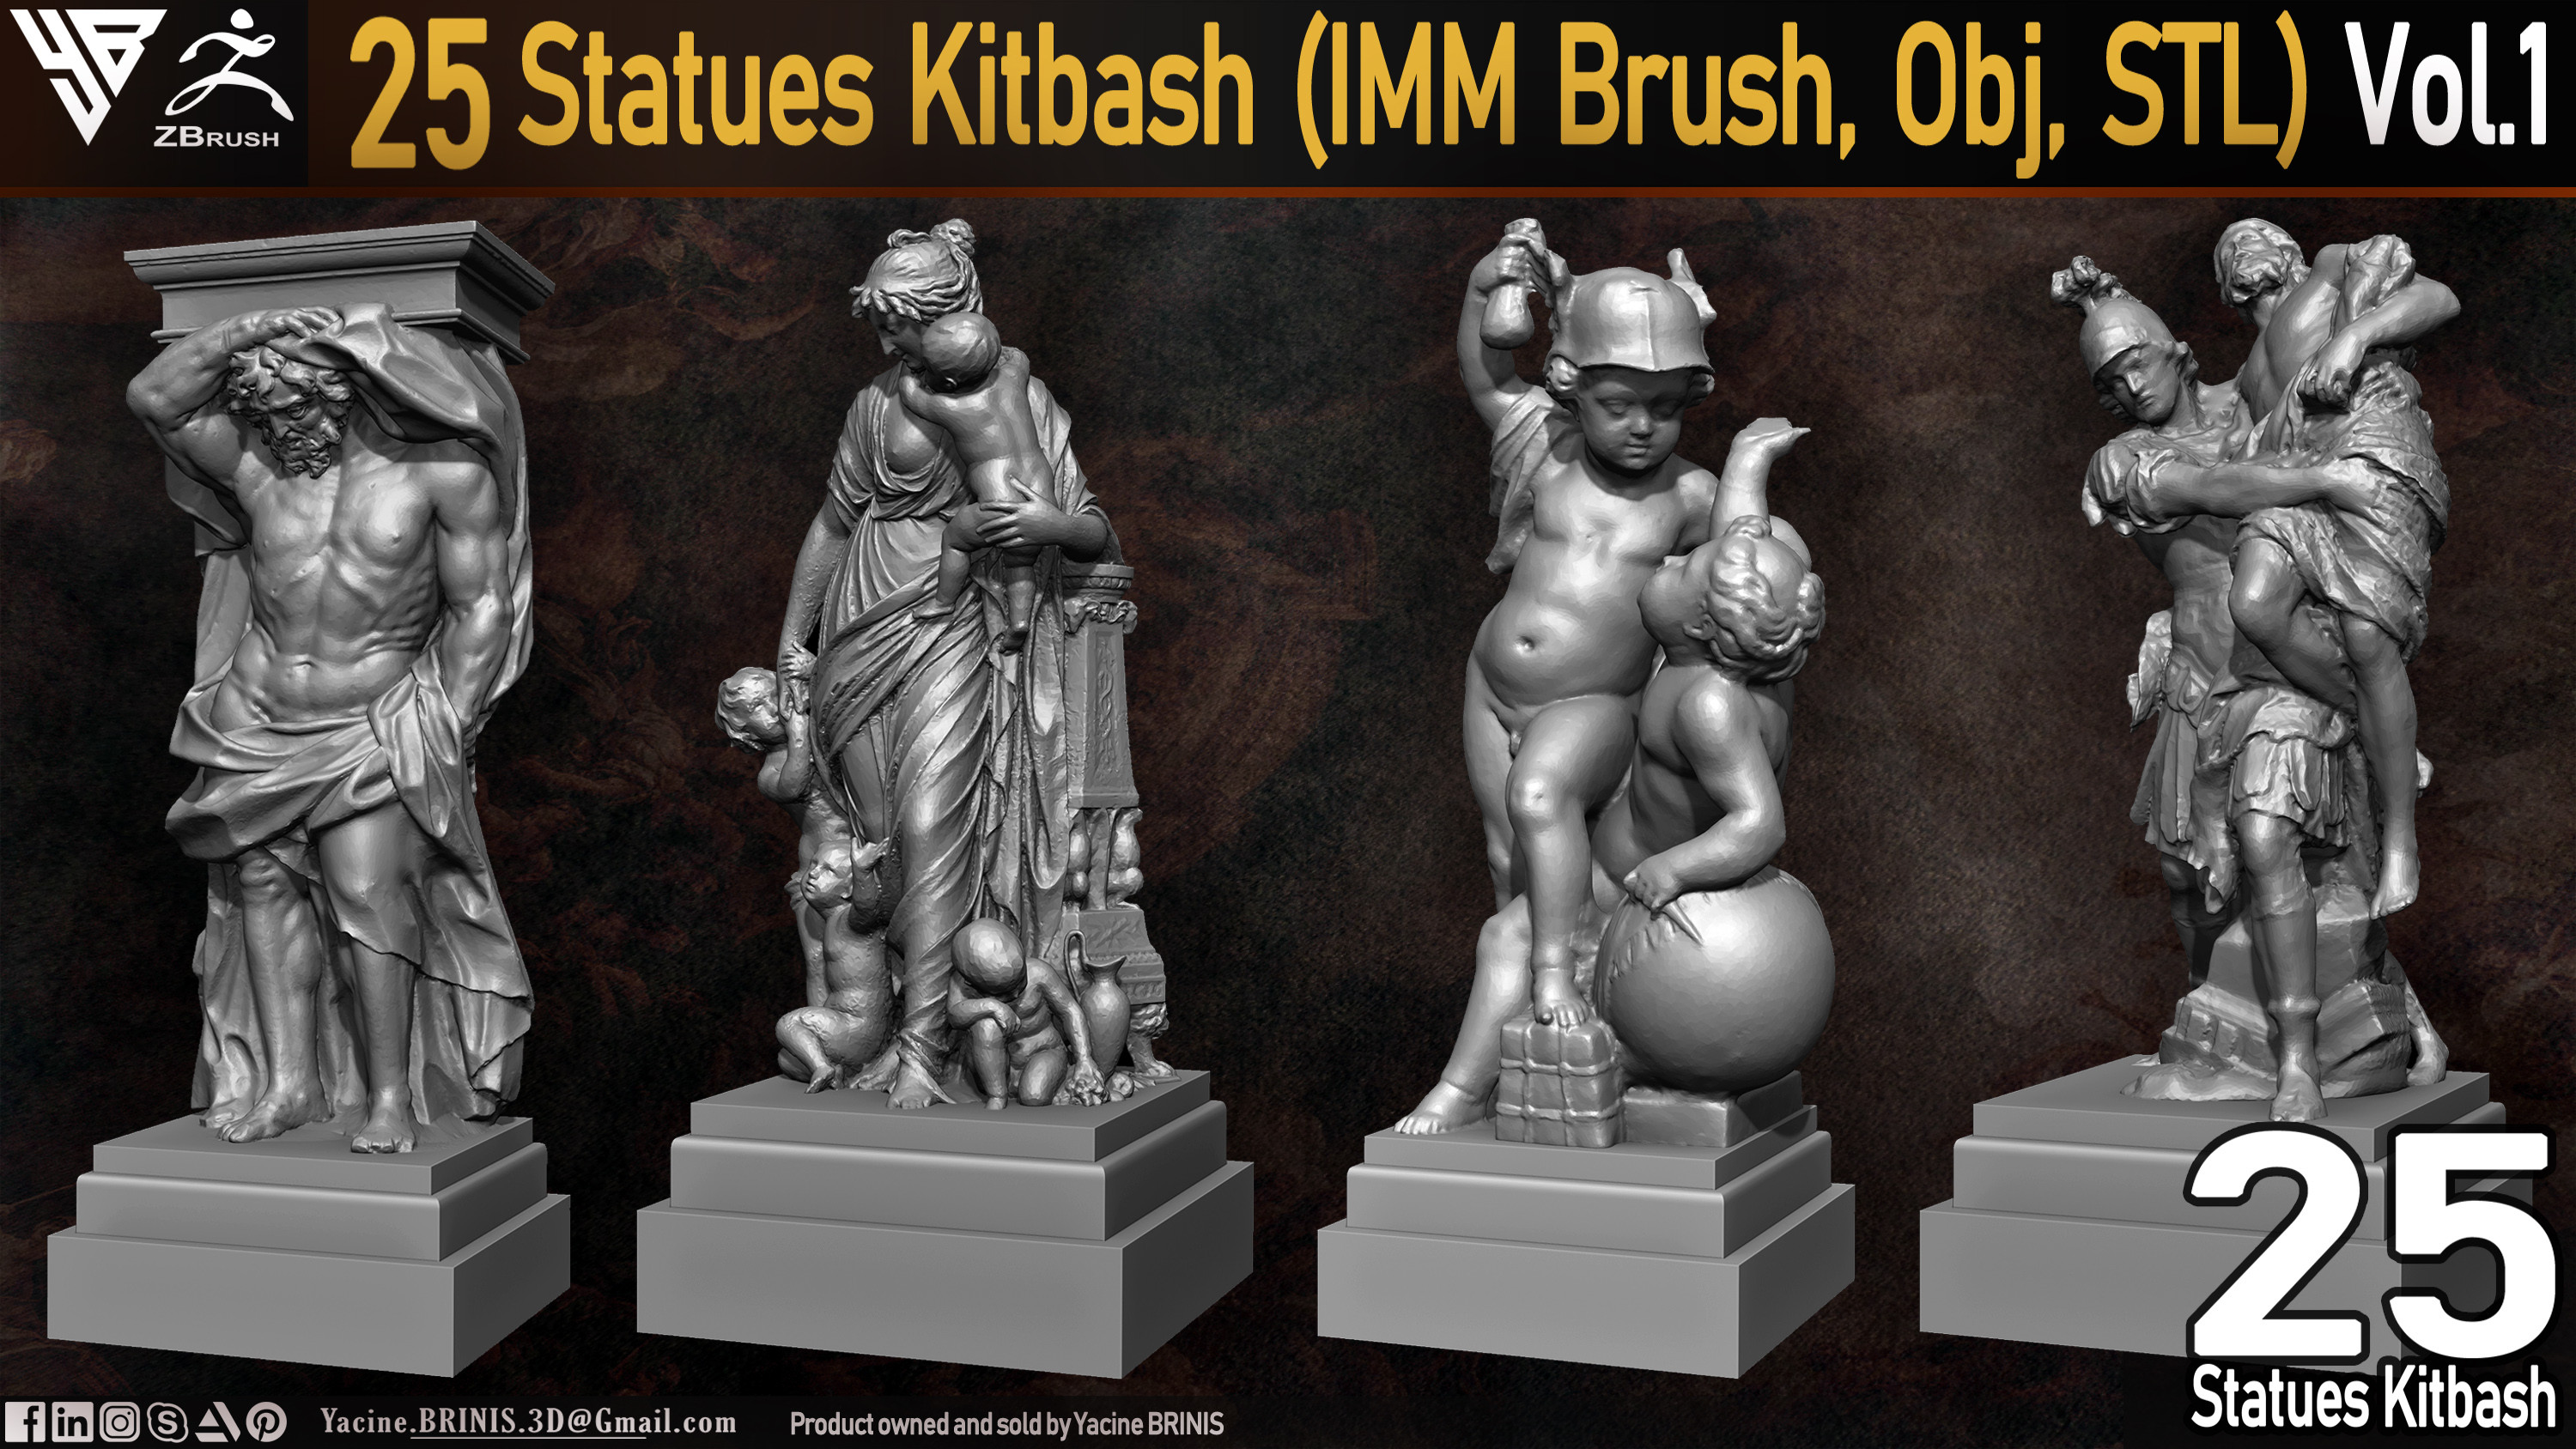 Statues Kitbash by yacine brinis Set 01